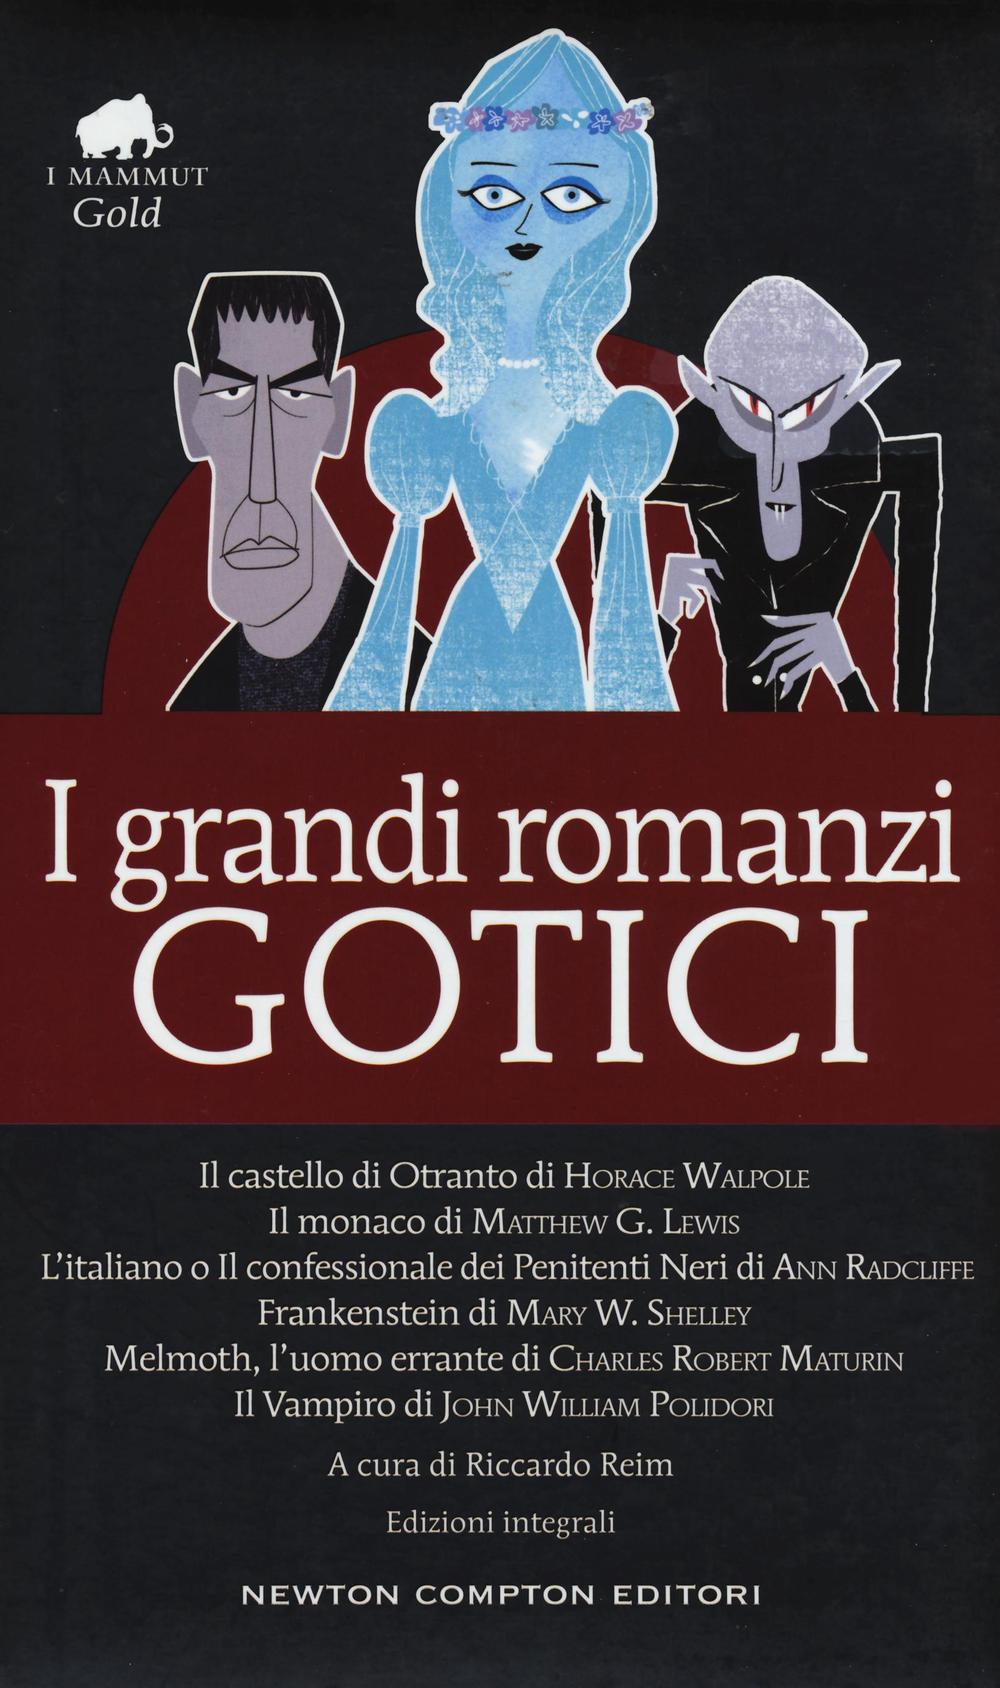 I grandi romanzi gotici: Il castello di Otranto-Il monaco-L'italiano o il confessionale dei penitenti neri-Frankenstein-Melmoth l'uomo errante-Il vampiro